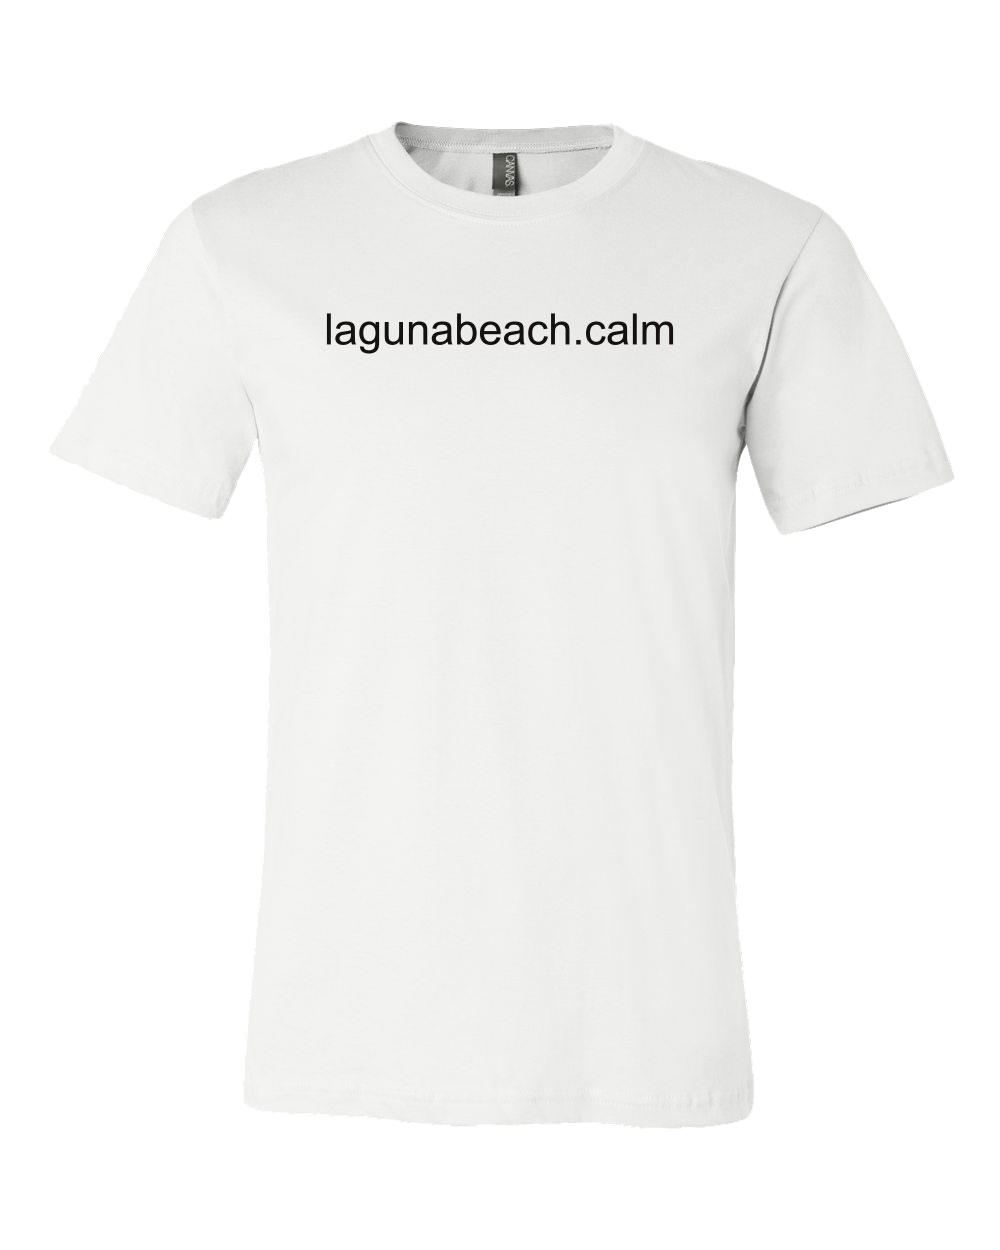 Laguna Beach Calm Unisex Tee - White